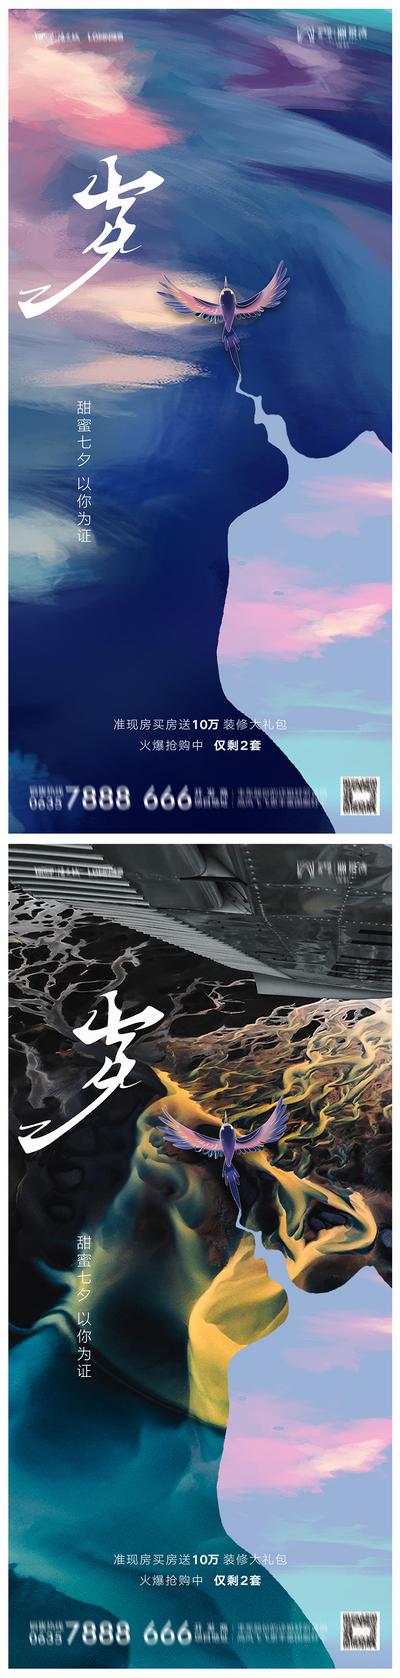 南门网 地产七夕情人节系列海报